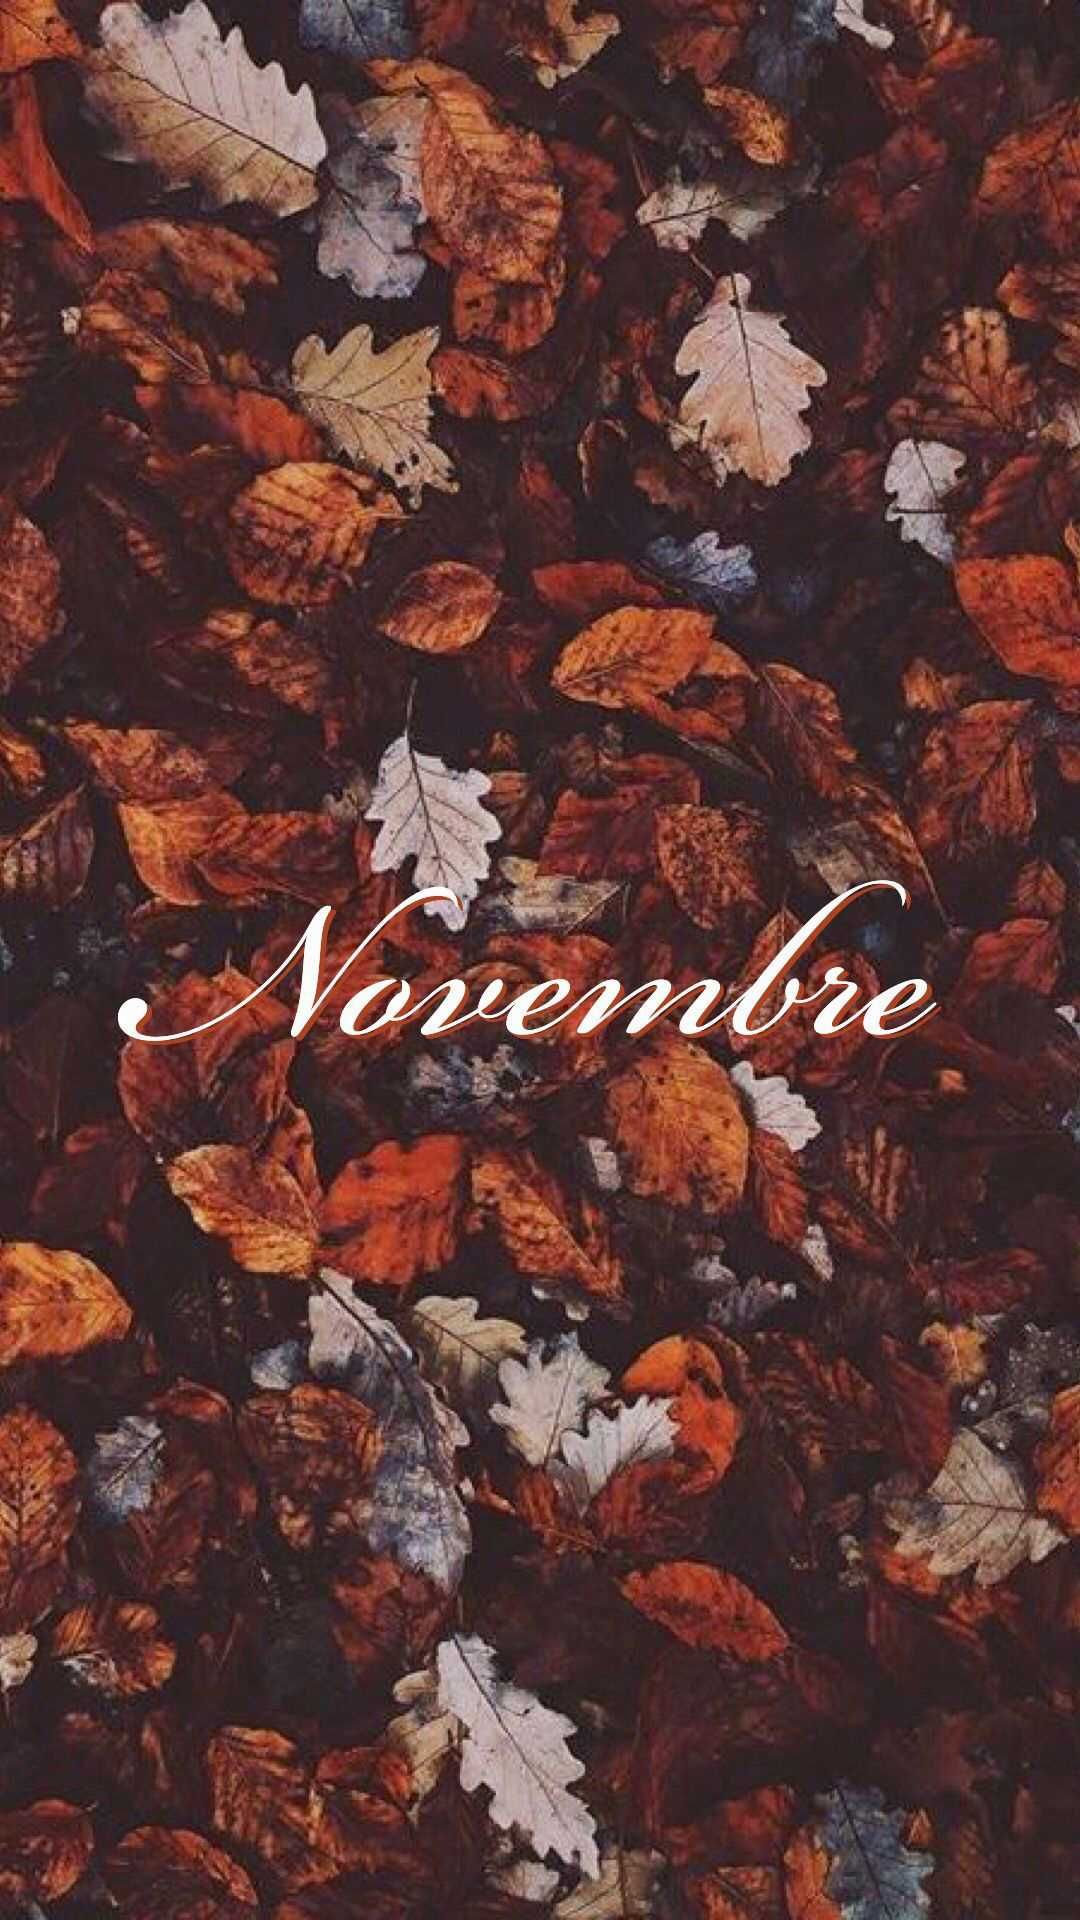 November wallpaper for phone and desktop. - November